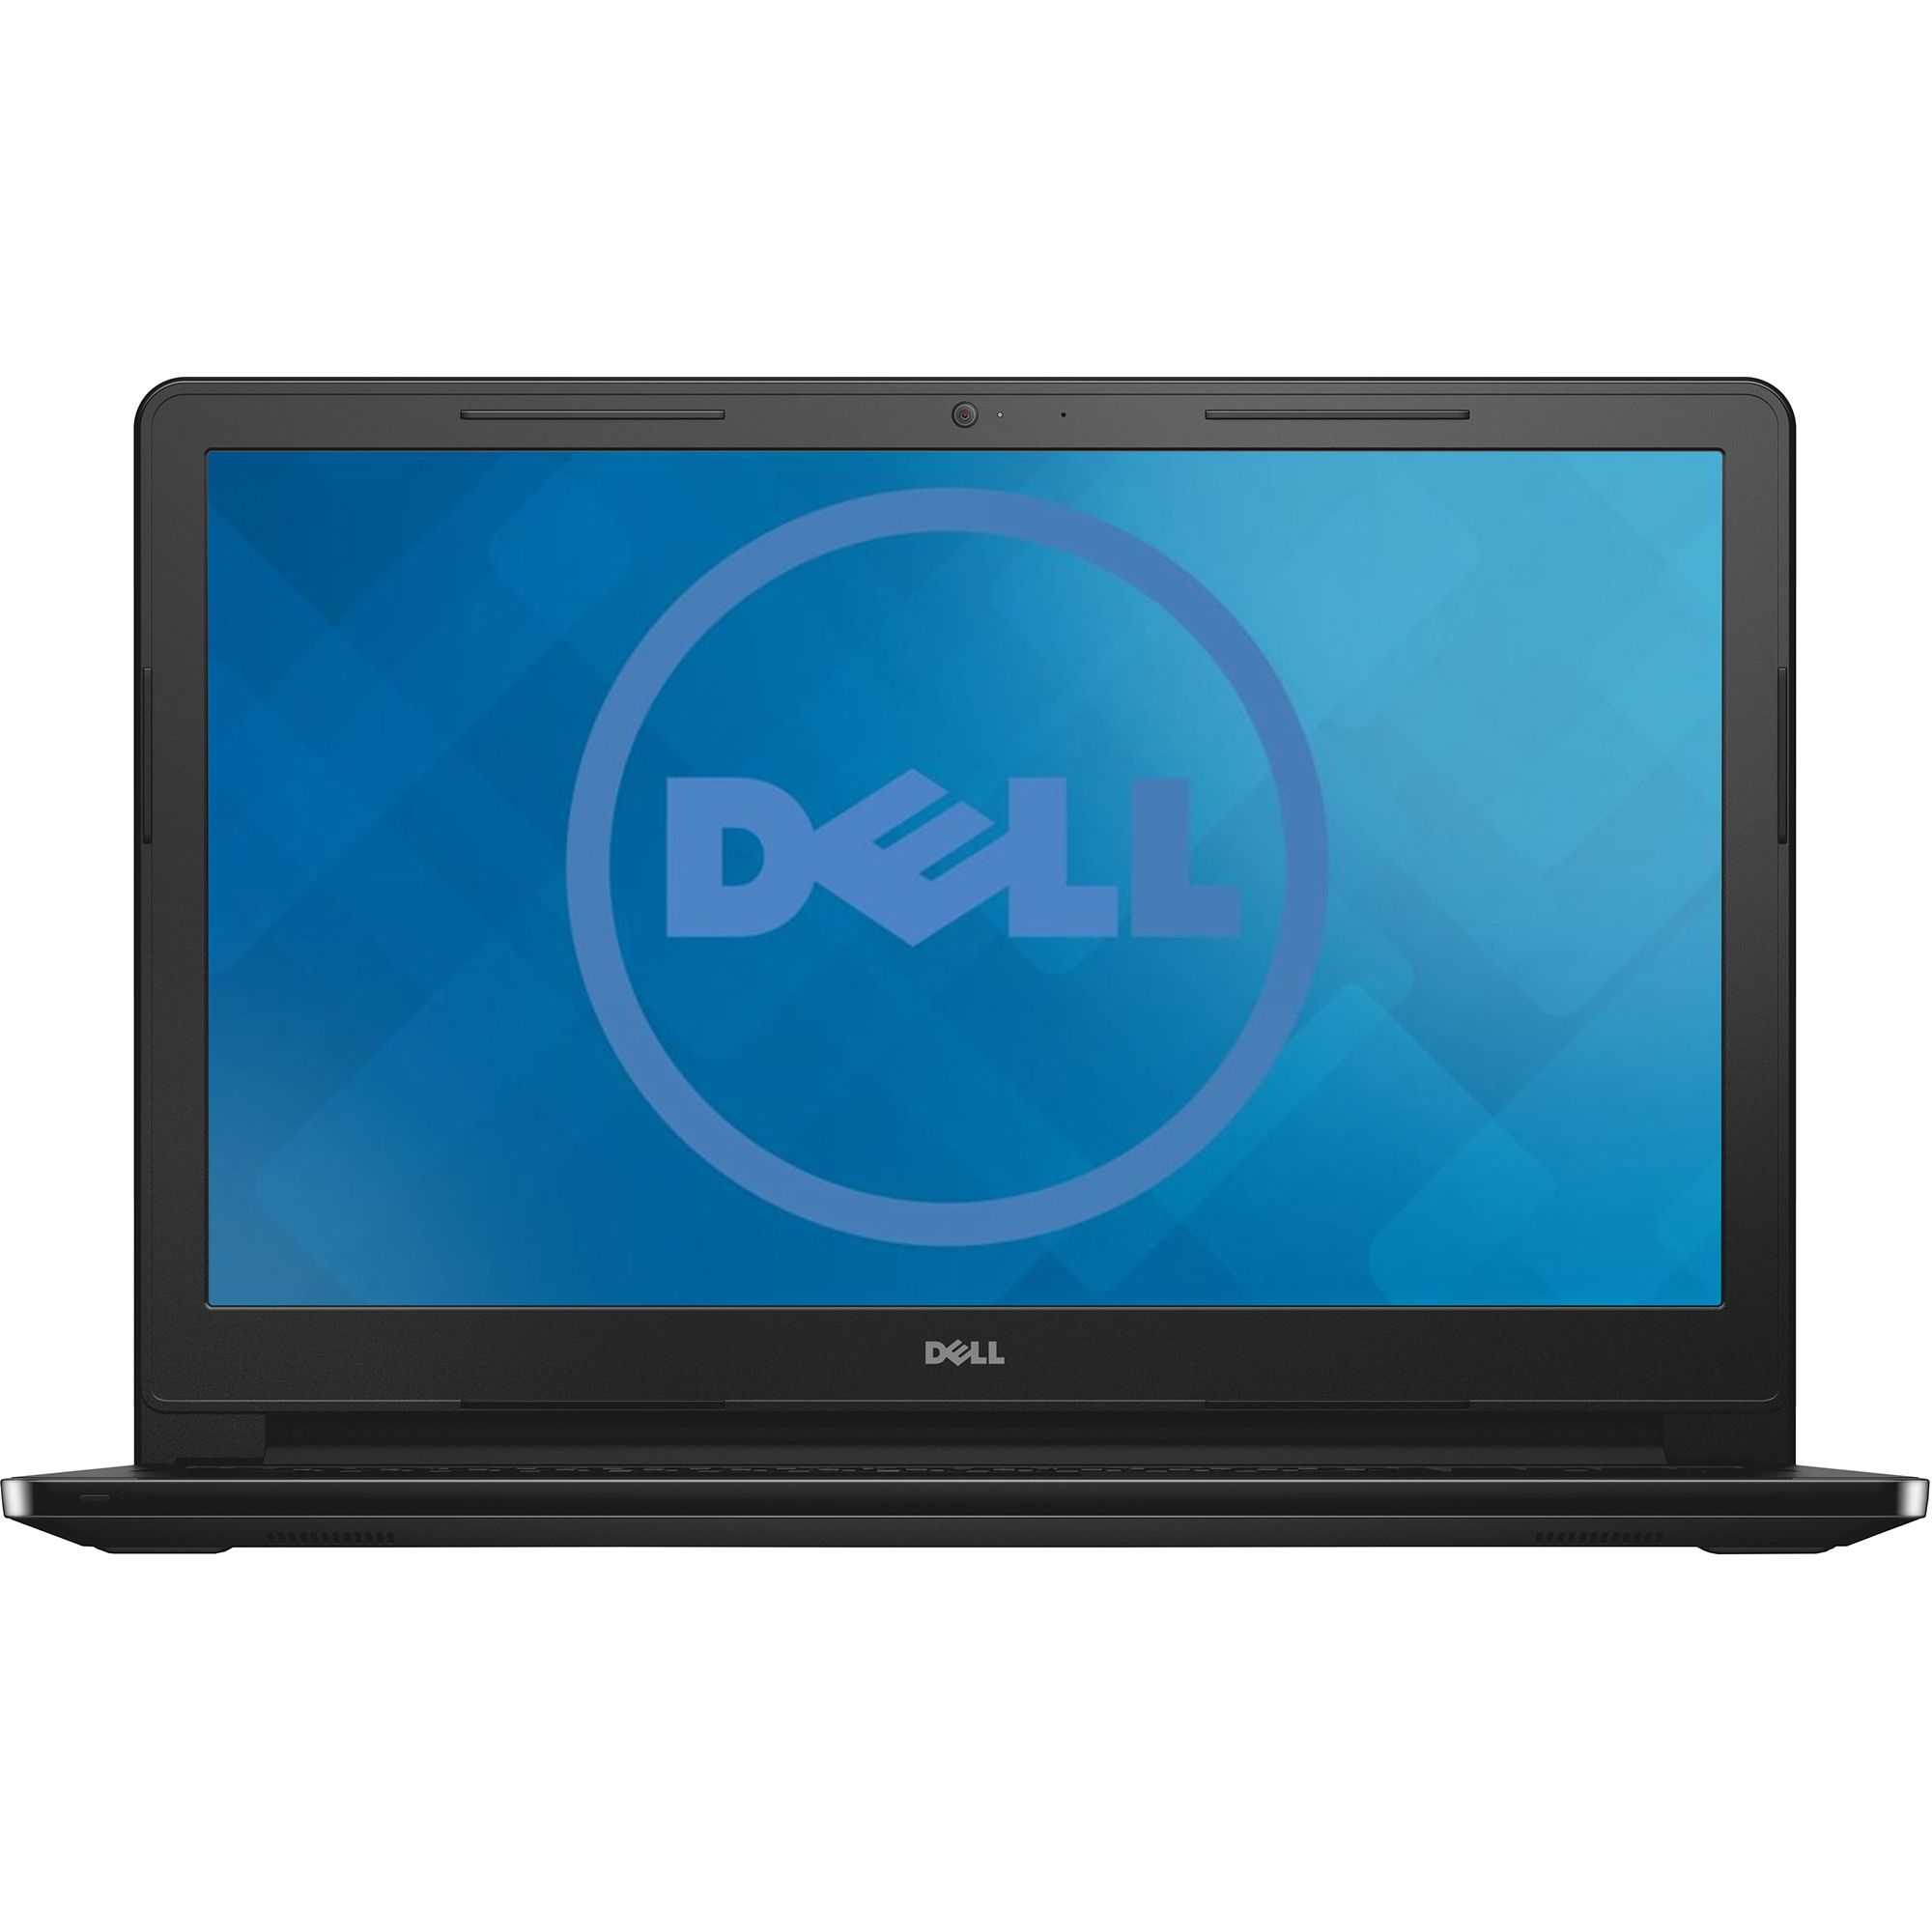 Laptop DELL 3567, i3-6006U, 15.6", 4GB, 1TB, Intel 520, Linux